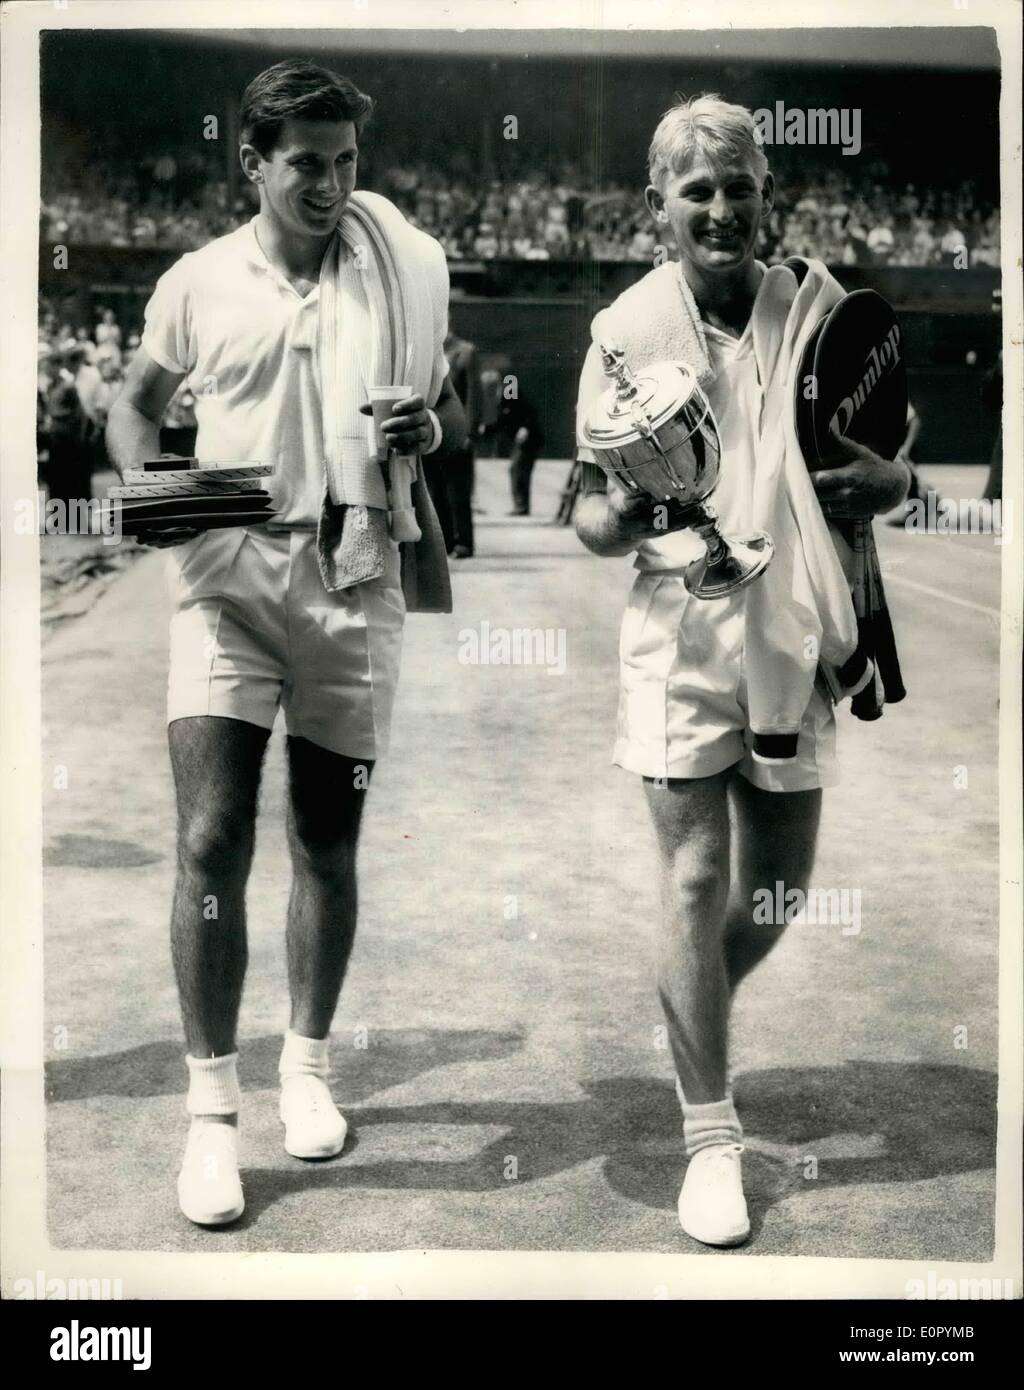 7. Juli 1957 - behält Lew Hoads Titel nach einem Sieg über Ashley Cooper im Herren Einzel Finale in Wimbledon. Foto zeigt Lew Hoad trägt seine Tasse auf verlassen das Gericht mit anderen australischen Ashley Cooper - nach dem Sieg der Herren Einzel in Wimbledon Finale heute Nachmittag. Stockfoto